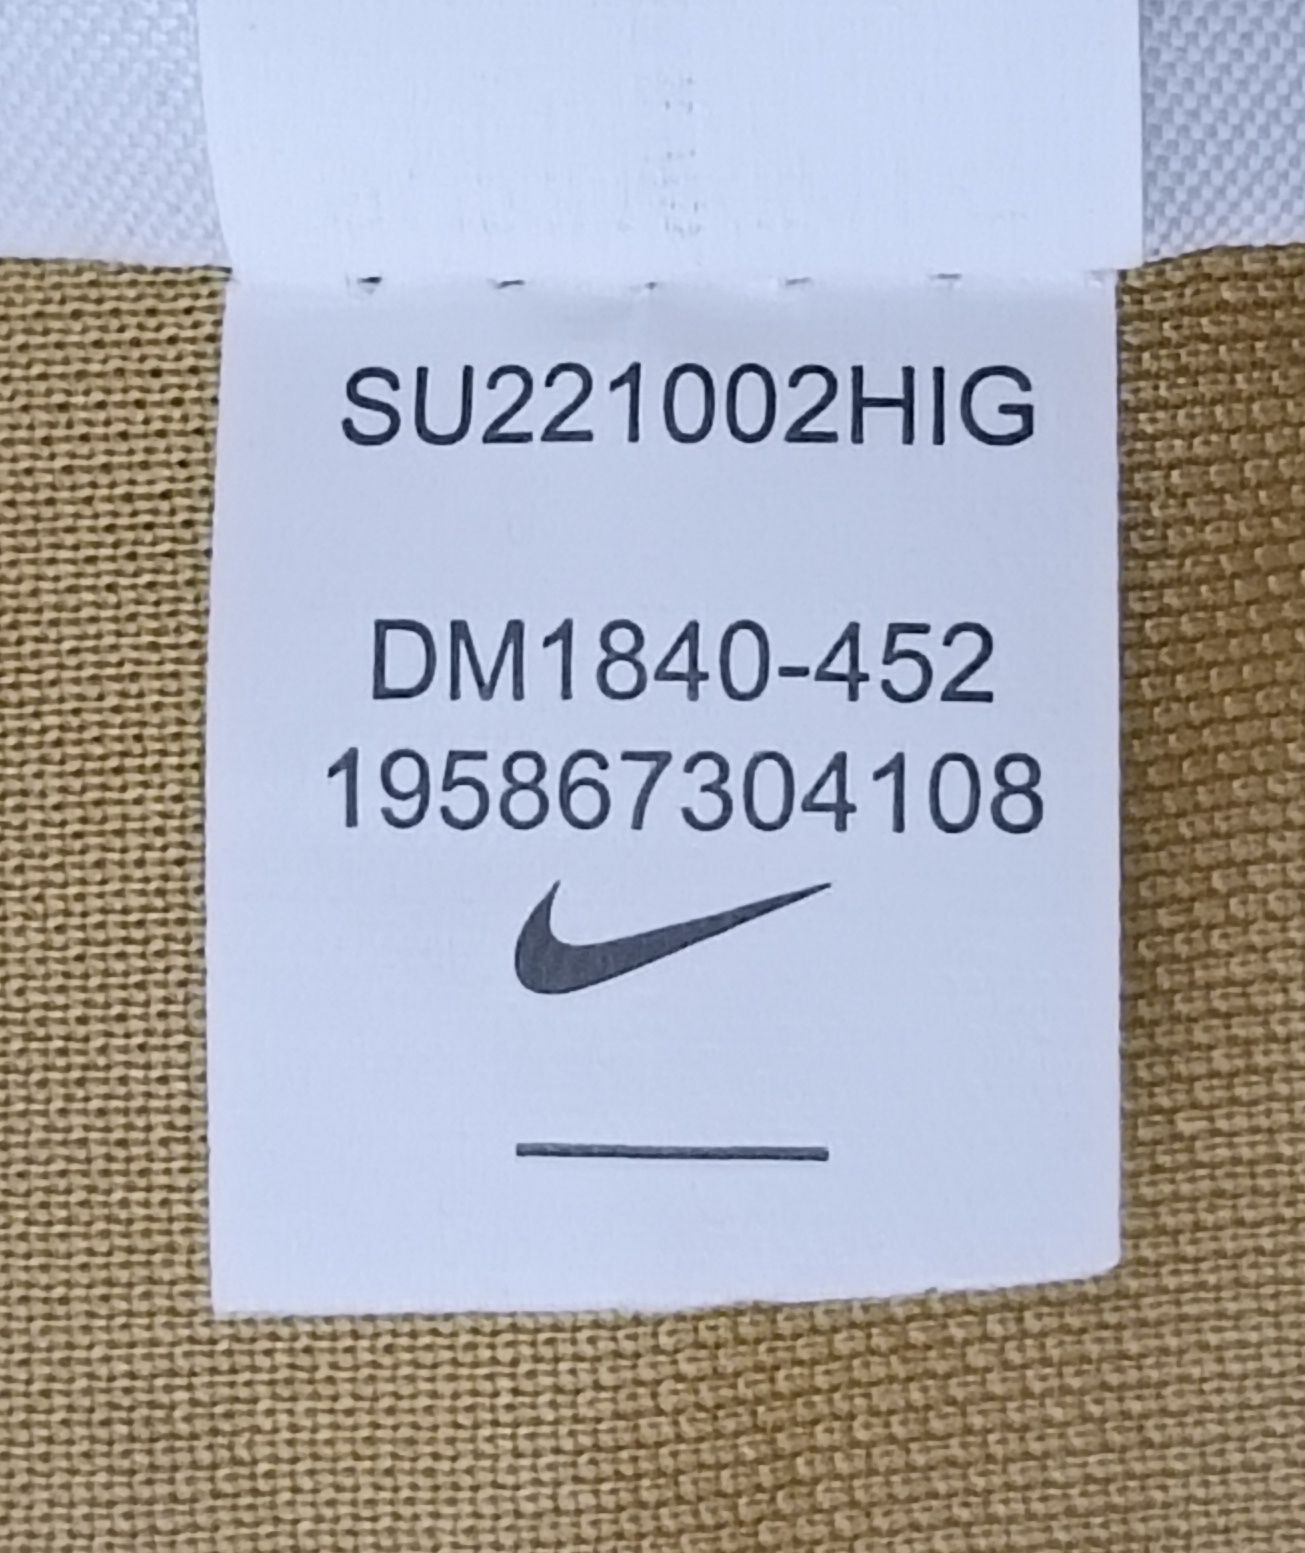 Nike DRI-FIT Barcelona #25 Aubameyang оригинална тениска XL Найк Барса